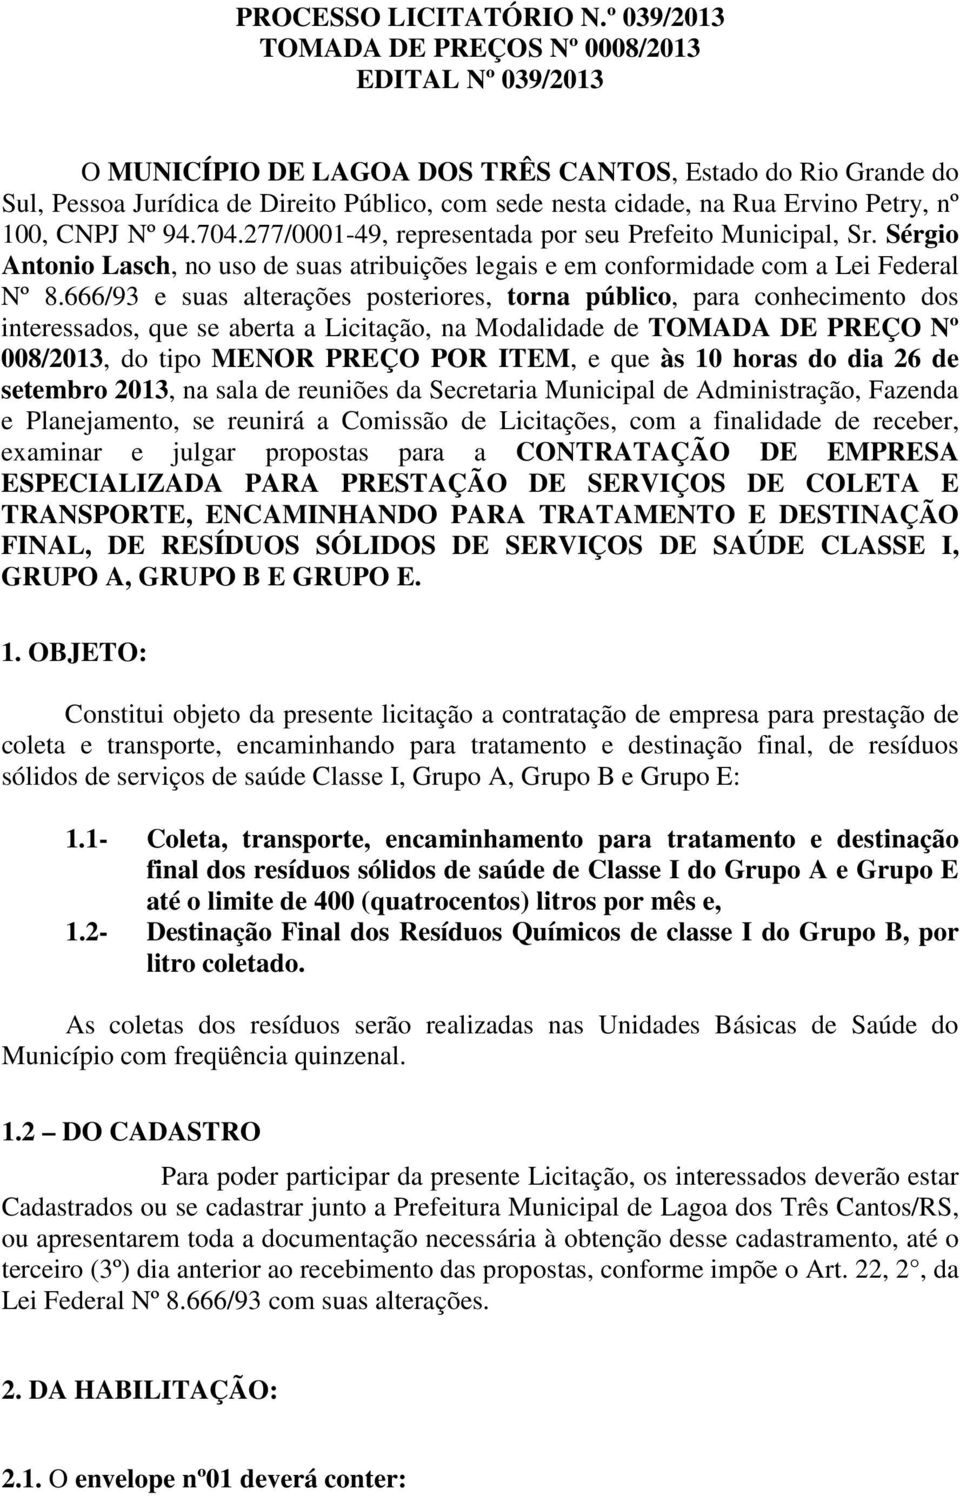 Petry, nº 100, CNPJ Nº 94.704.277/0001-49, representada por seu Prefeito Municipal, Sr. Sérgio Antonio Lasch, no uso de suas atribuições legais e em conformidade com a Lei Federal Nº 8.